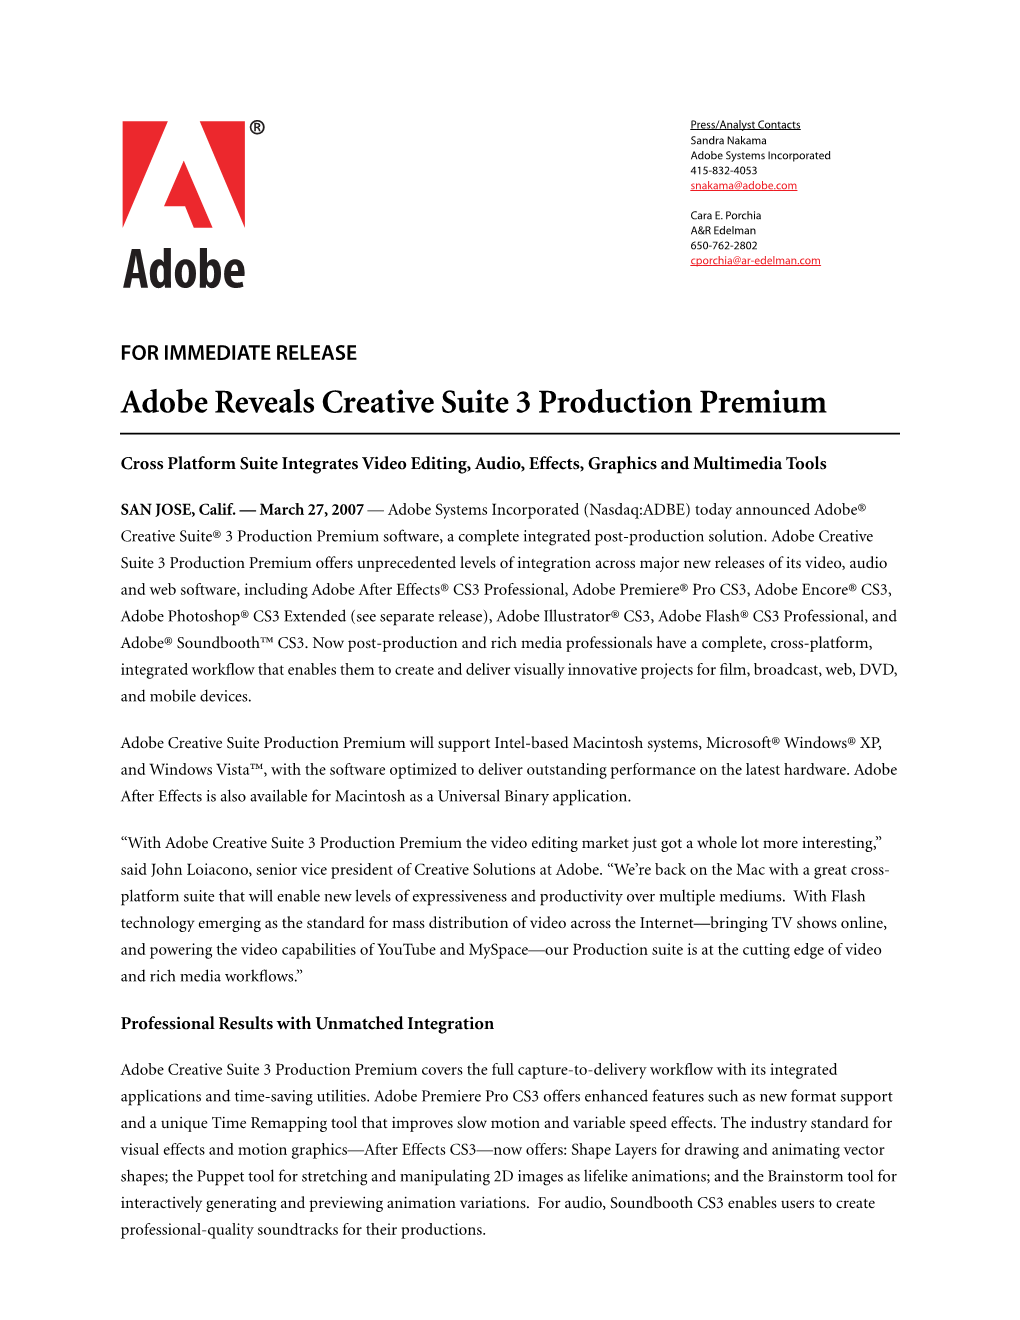 Adobe Reveals Creative Suite 3 Production Premium